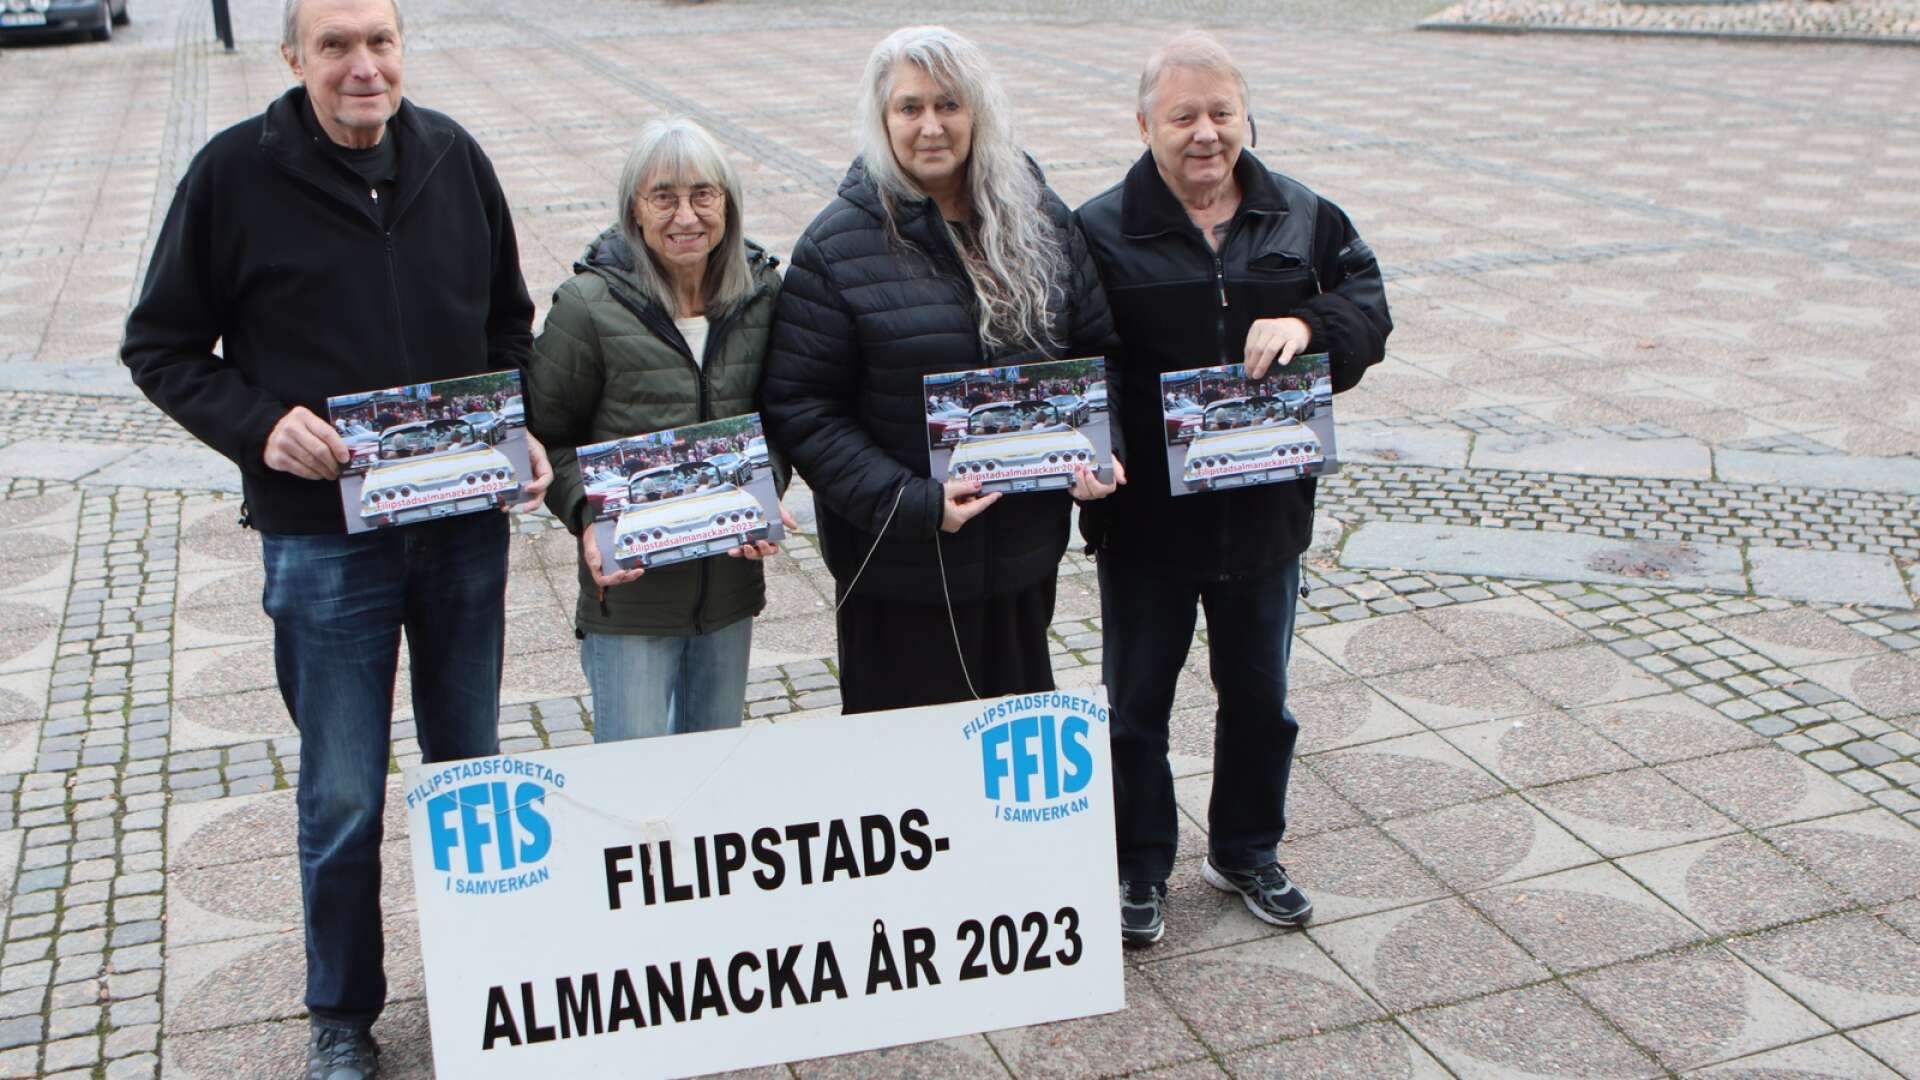  Ove Svensson, Karin Fröde Olsson, Marina Tallberg och Tommy Pettersson har alla jobbat med almanackan.